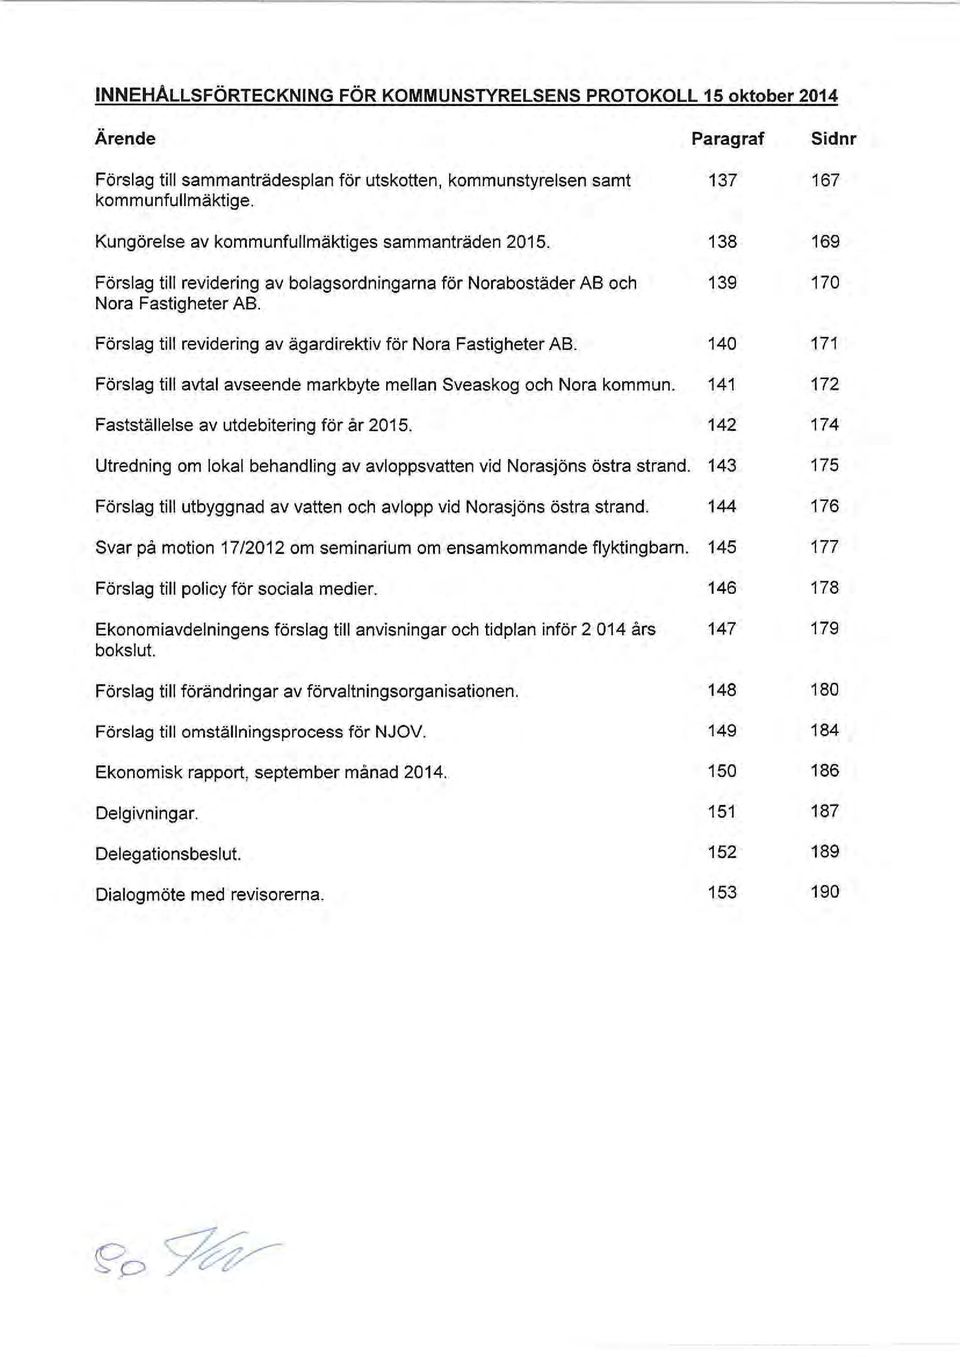 Förslag till revidering av ägardirektiv för Nora Fastigheter AB. Förslag till avtal avseende markbyte mellan Sveaskog och Nora kommun. Fastställelse av utdebitering för år 2015.